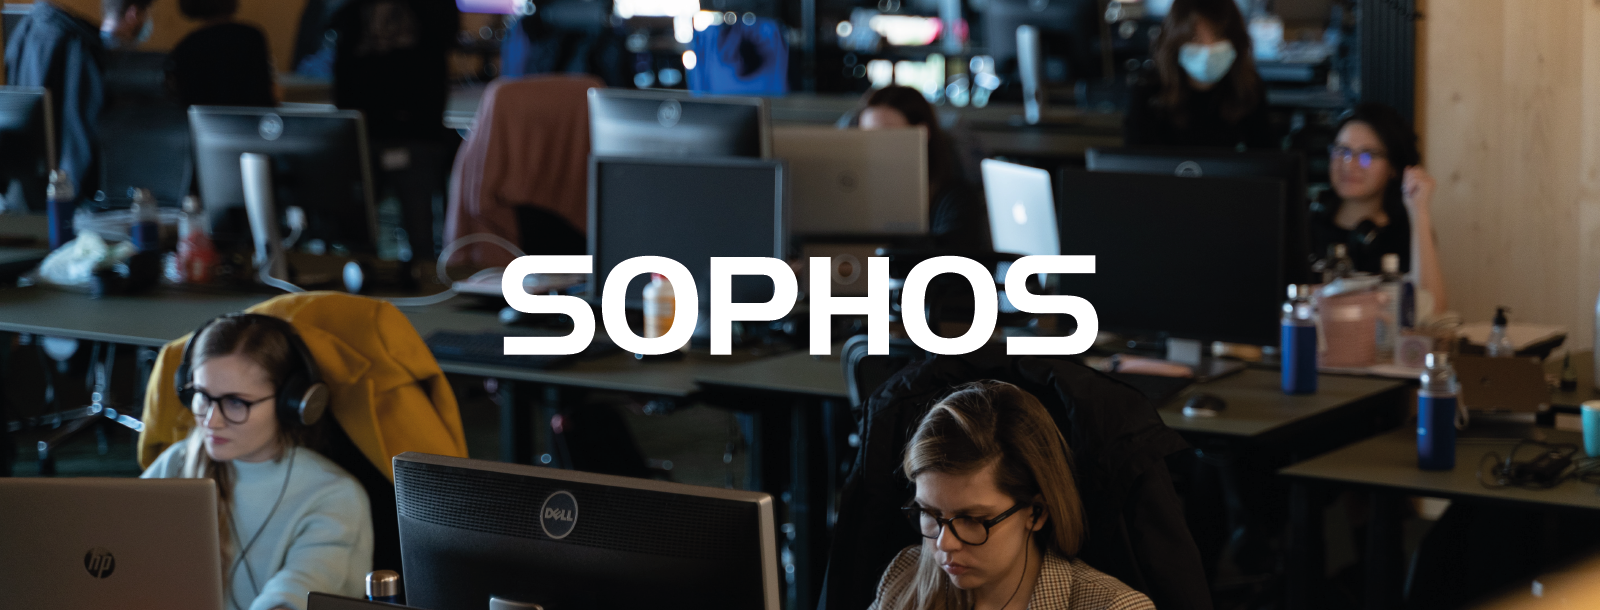 Tylko połowa pracowników uważa, że zasady cyberbezpieczeństwa są potrzebne – badanie Sophos